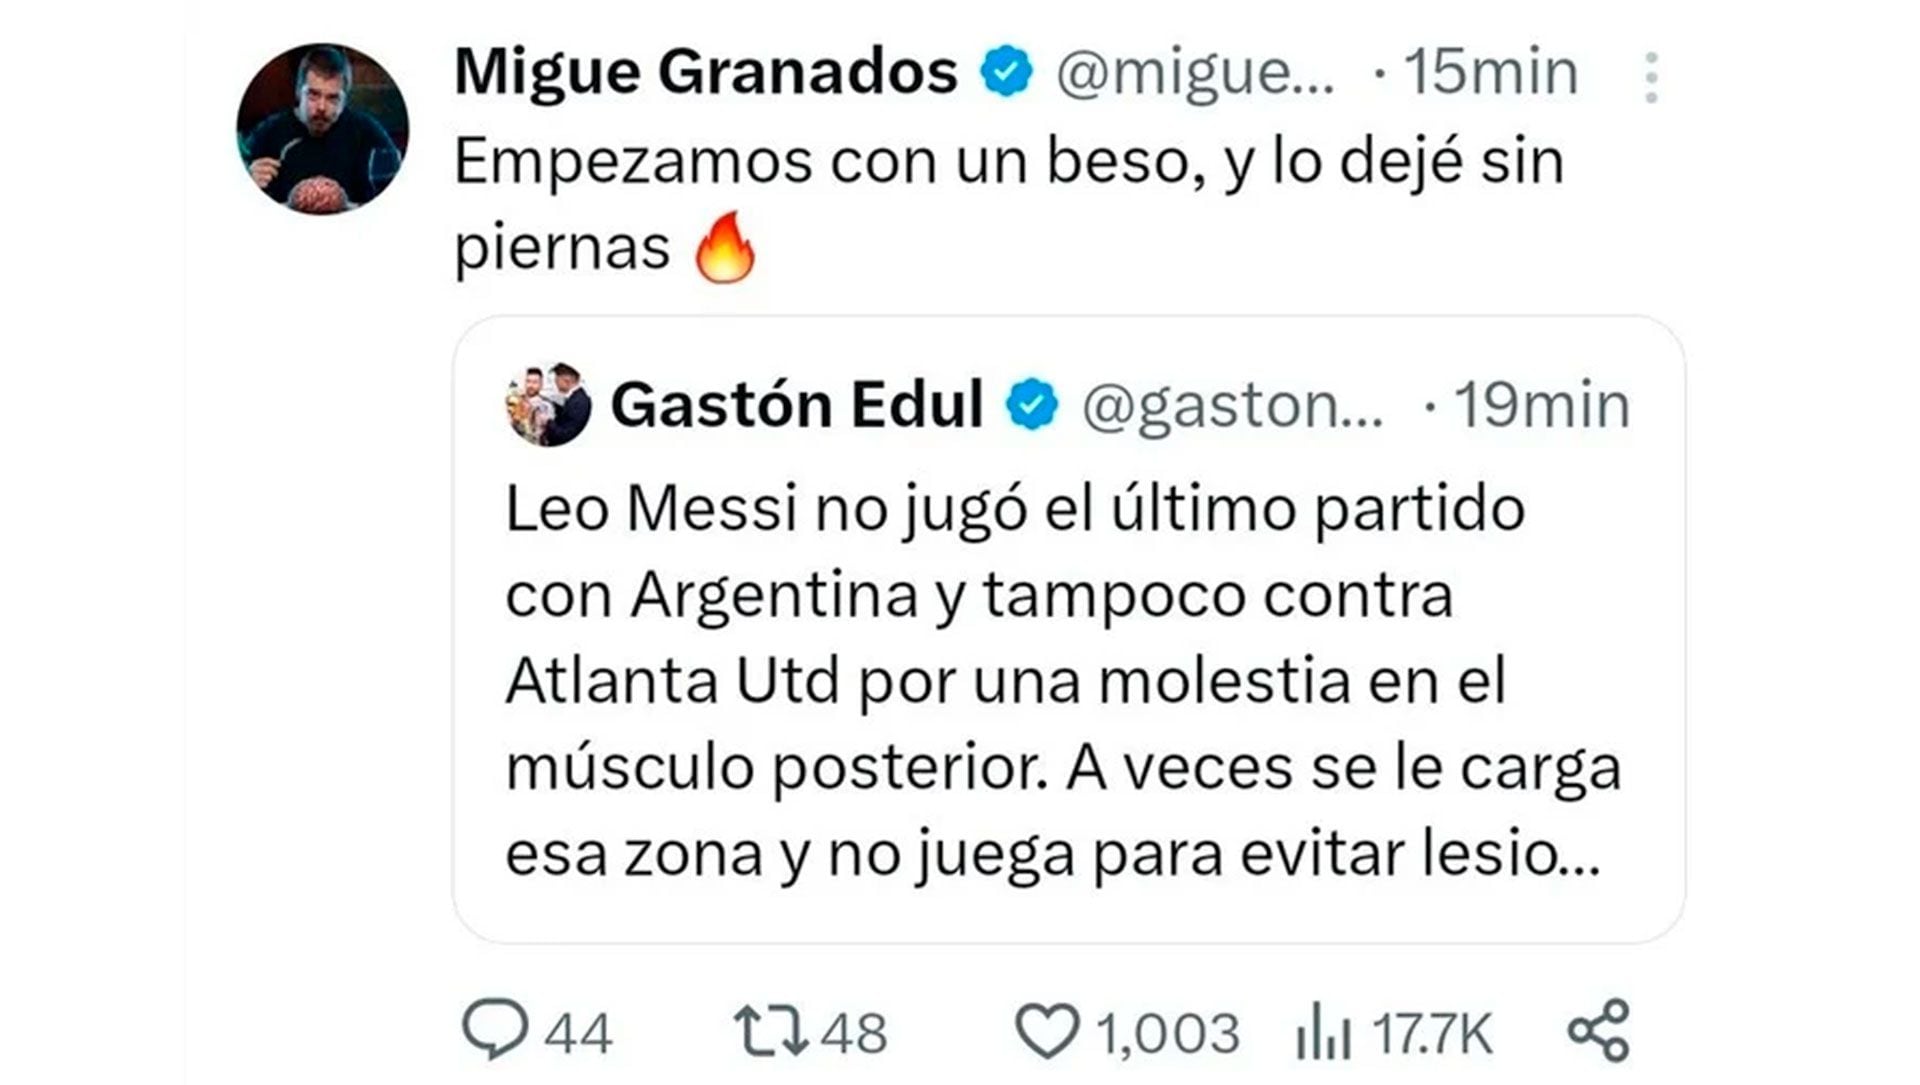 El tweet que Migue Granados borró (Captura: Twitter)